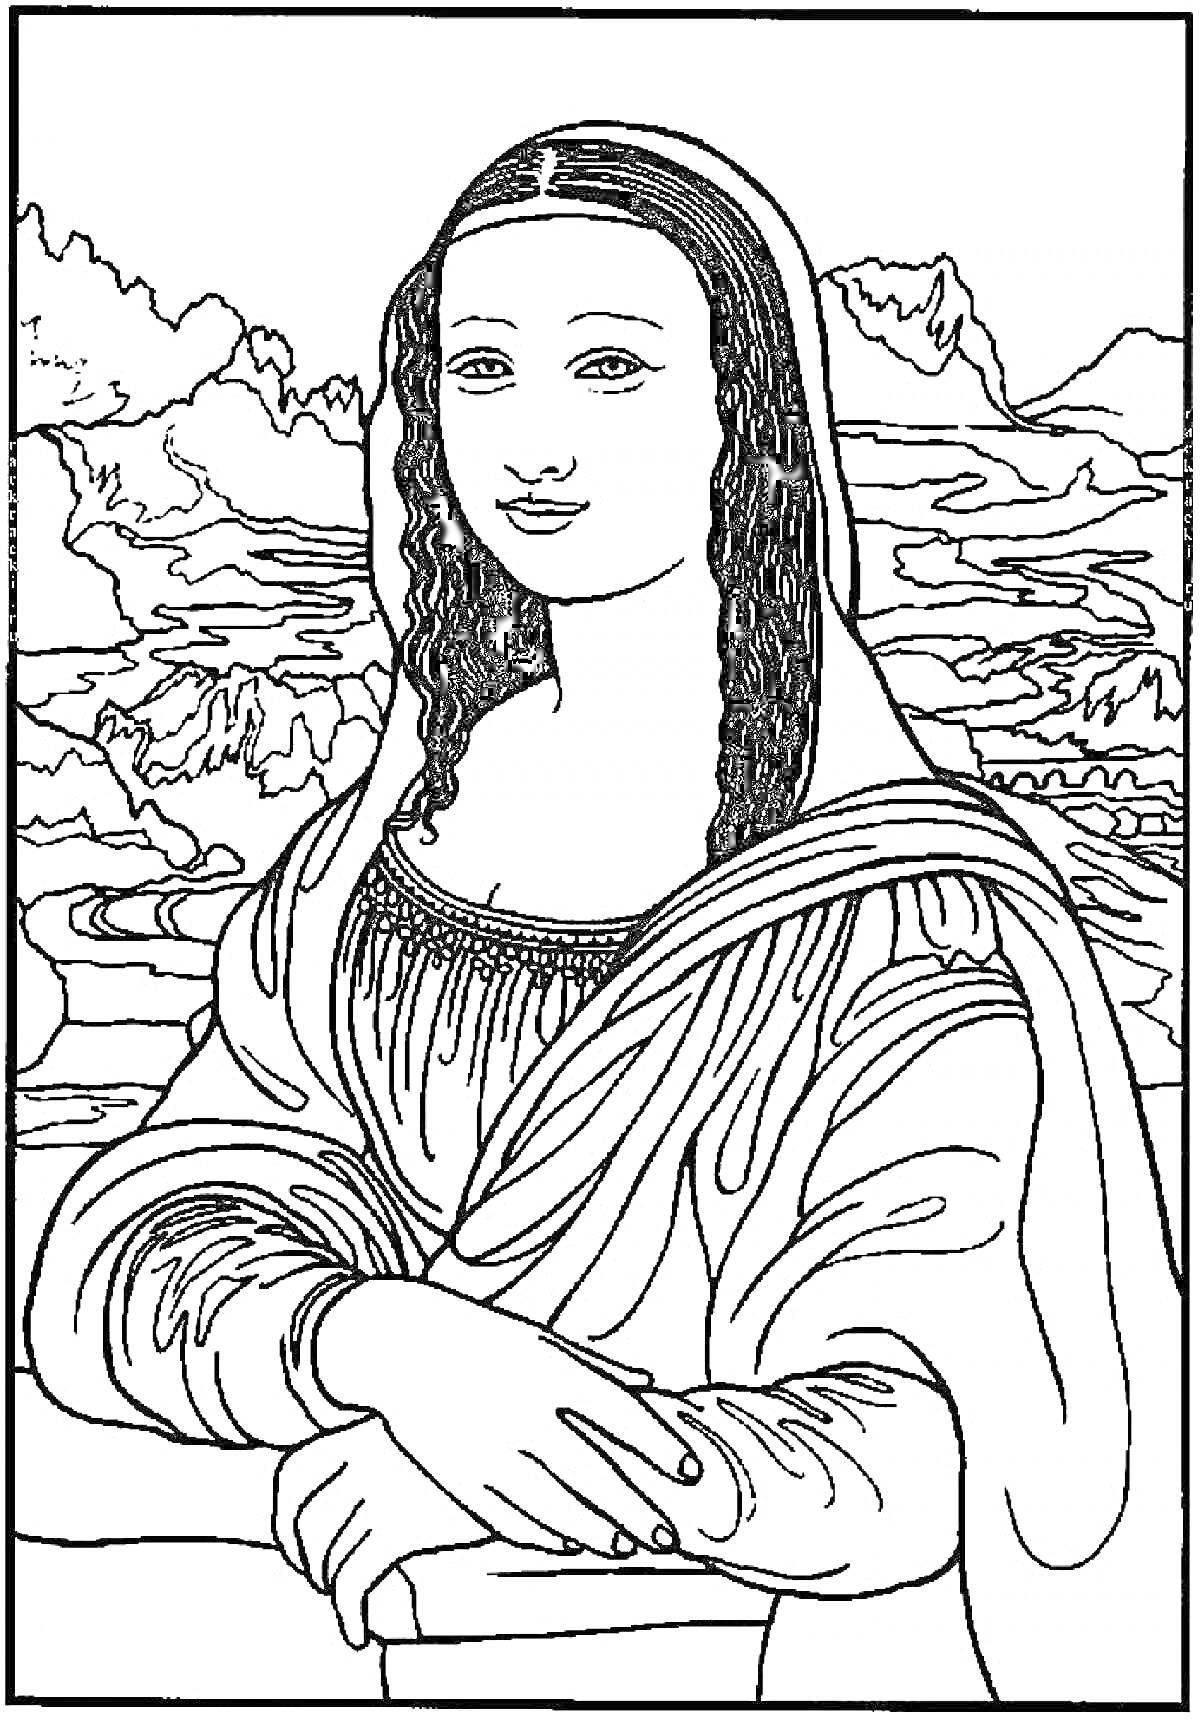 Раскраска Женский портрет перед ландшафтным фоном с горным пейзажем